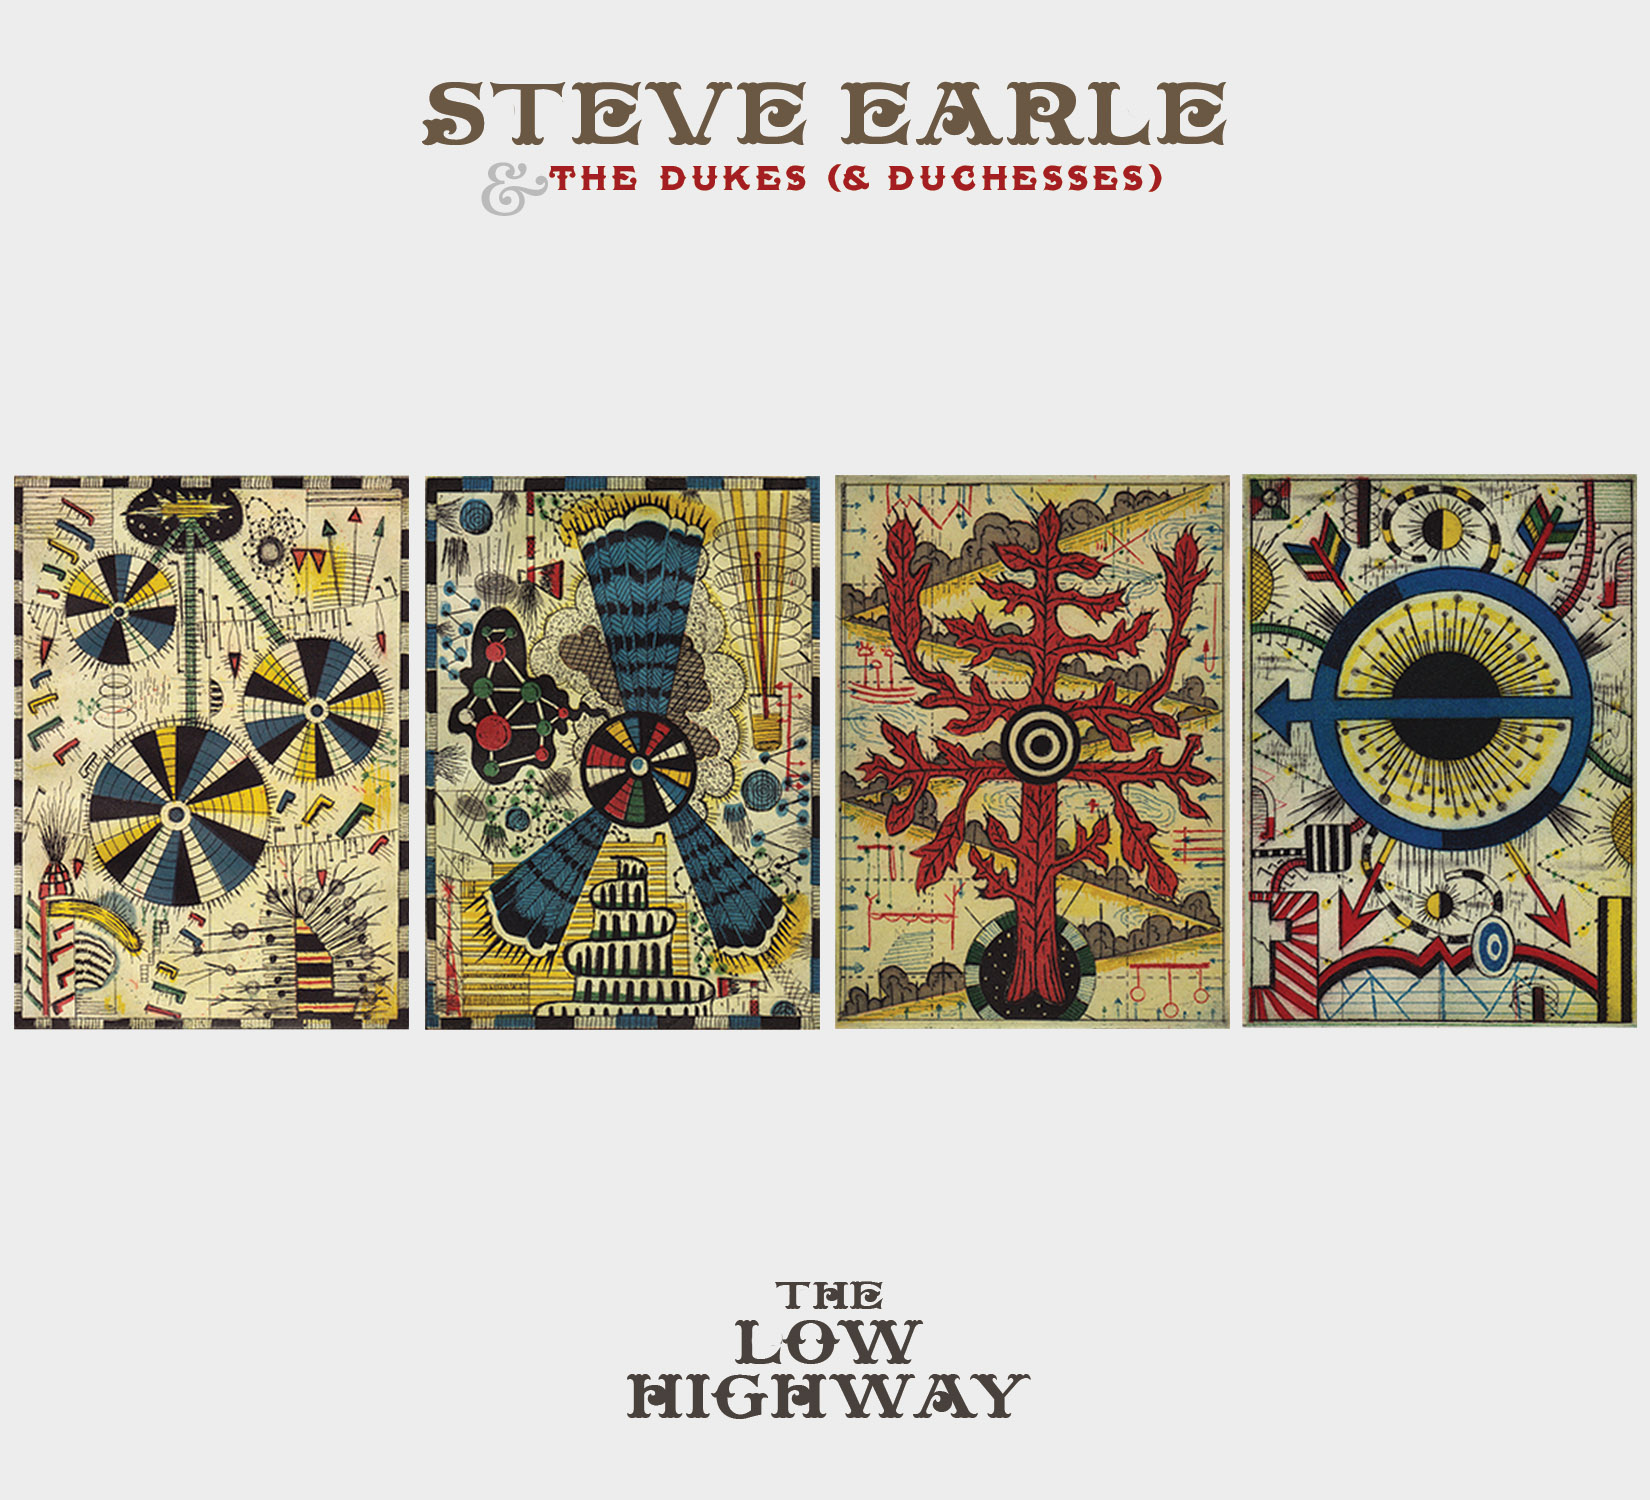 Steve Earle & The Dukes (& Duchesses) - The Low Highway (2013) [HDTracks FLAC 24bit/96kHz]